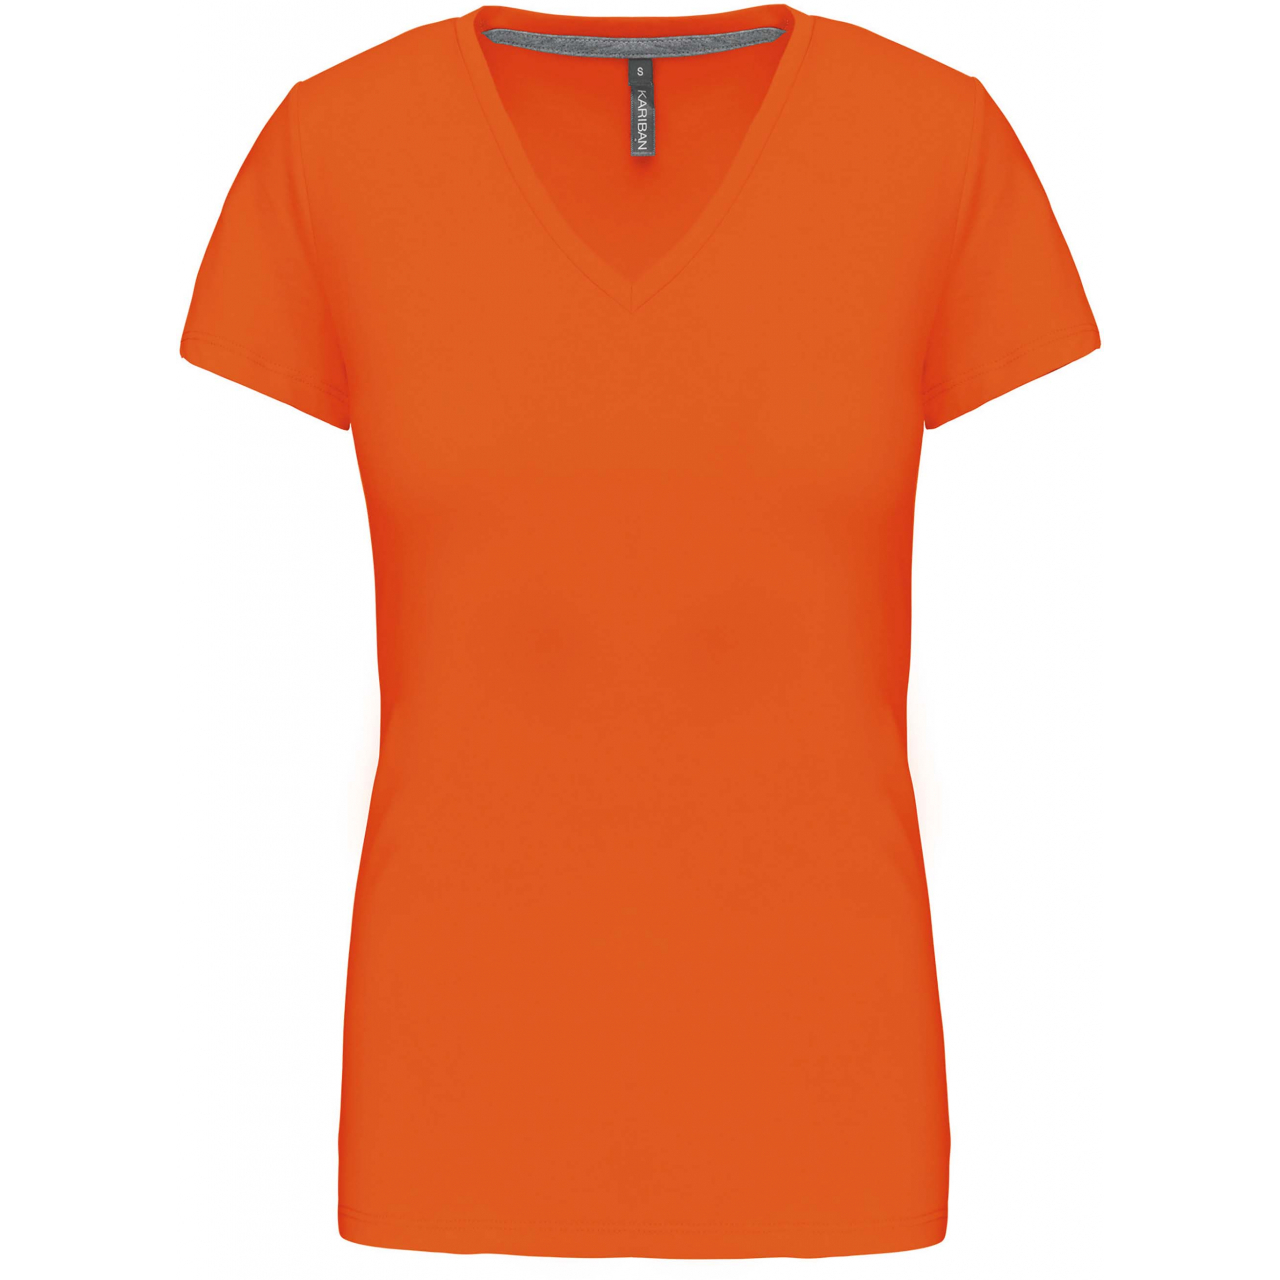 Dámské tričko Kariban V-neck s krátkým rukávem - oranžové, XXL